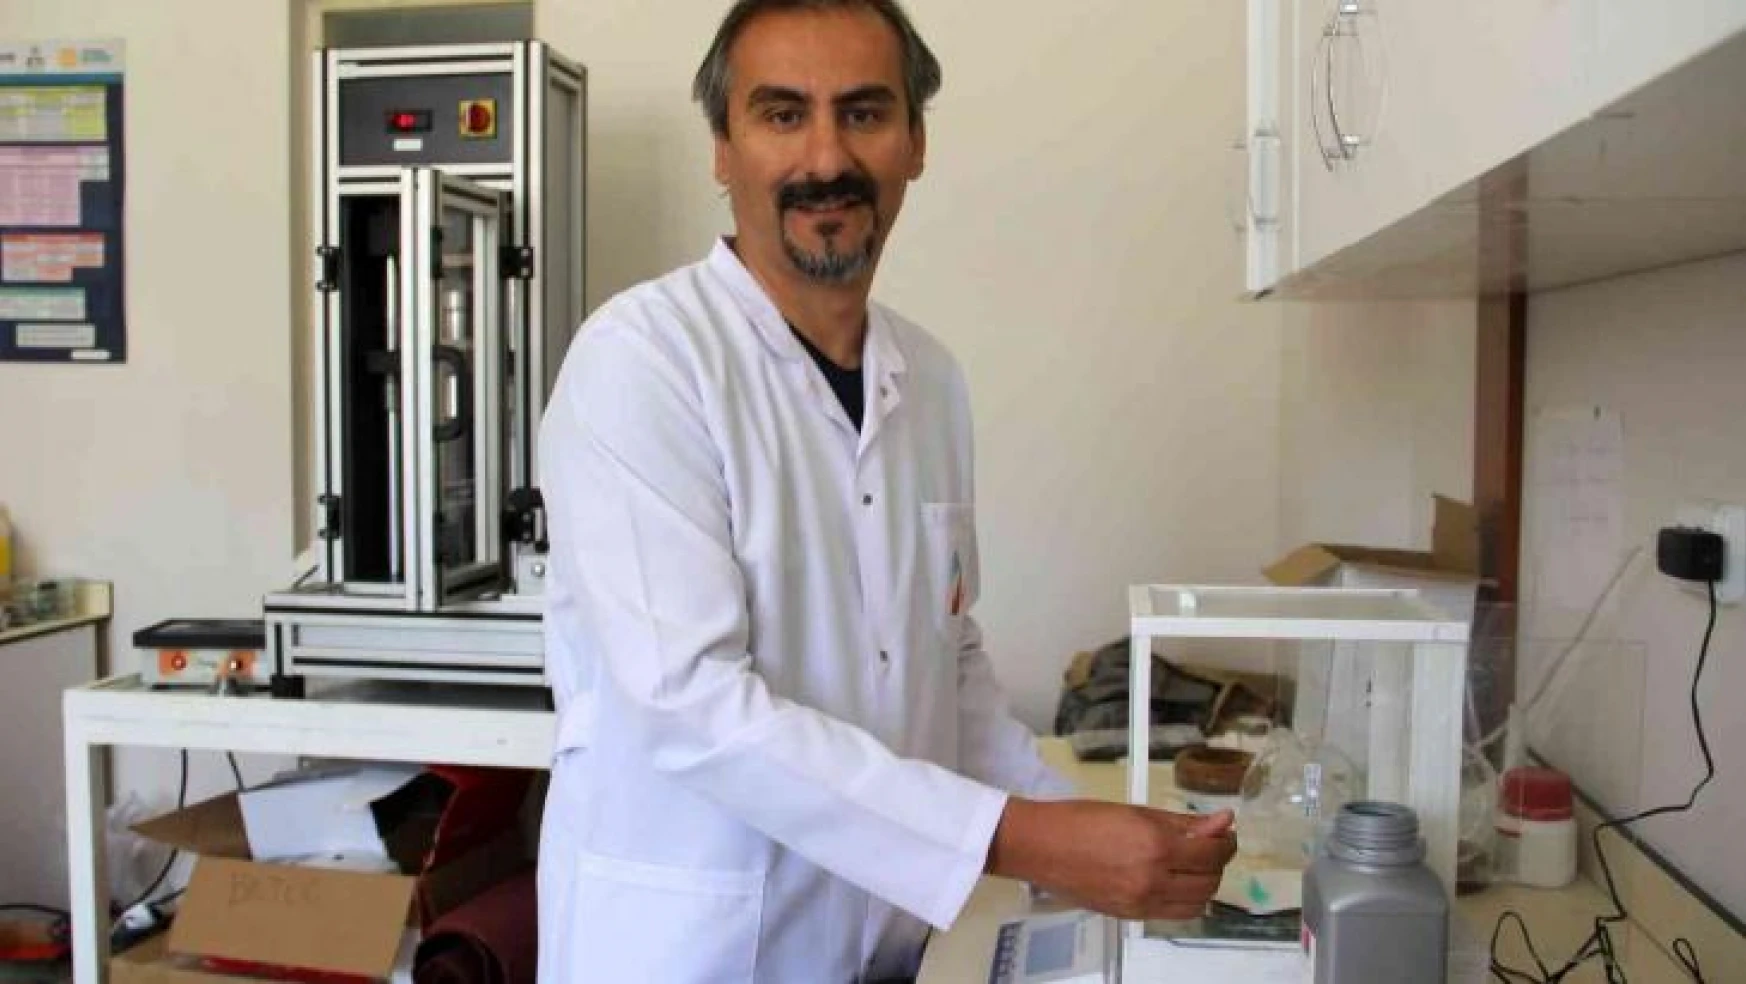 Türk bilim adamından pil teknolojilerinde çağ açacak çalışma